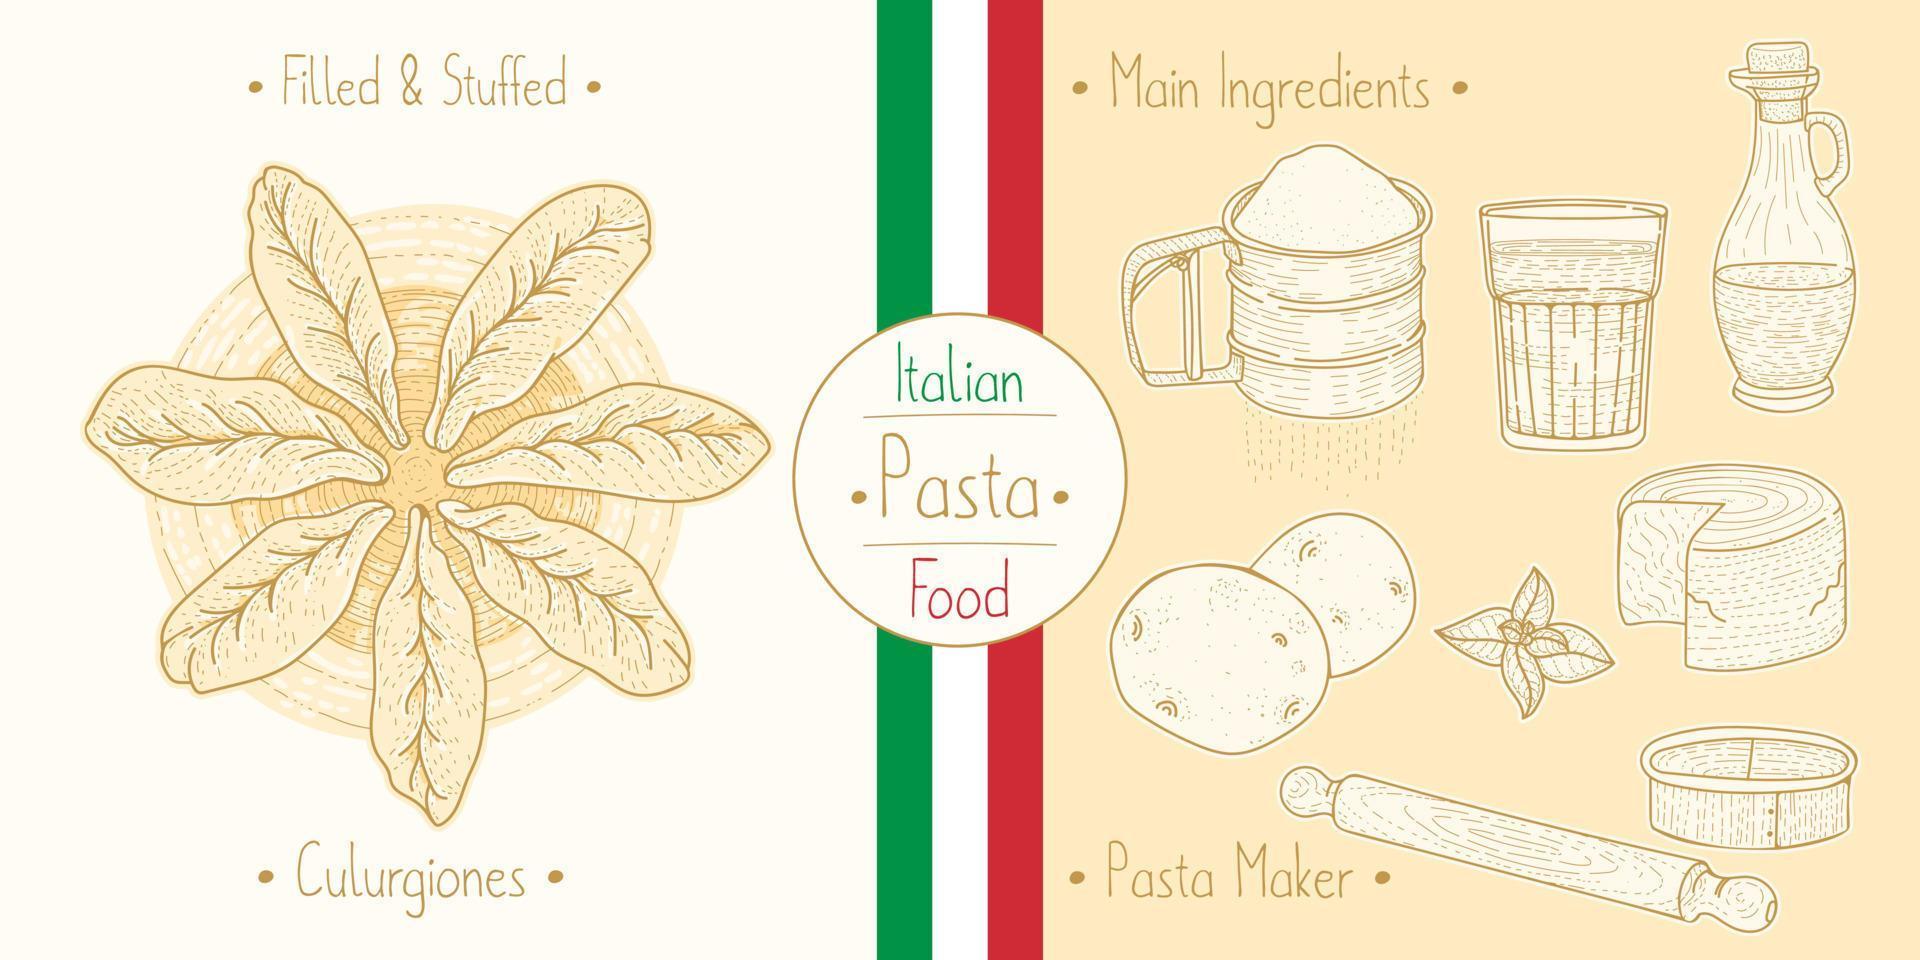 laga italiensk mat fylld culugrione pasta med fyllning och huvudingredienser och pastatillverkningsutrustning, skissar illustration i vintagestil vektor